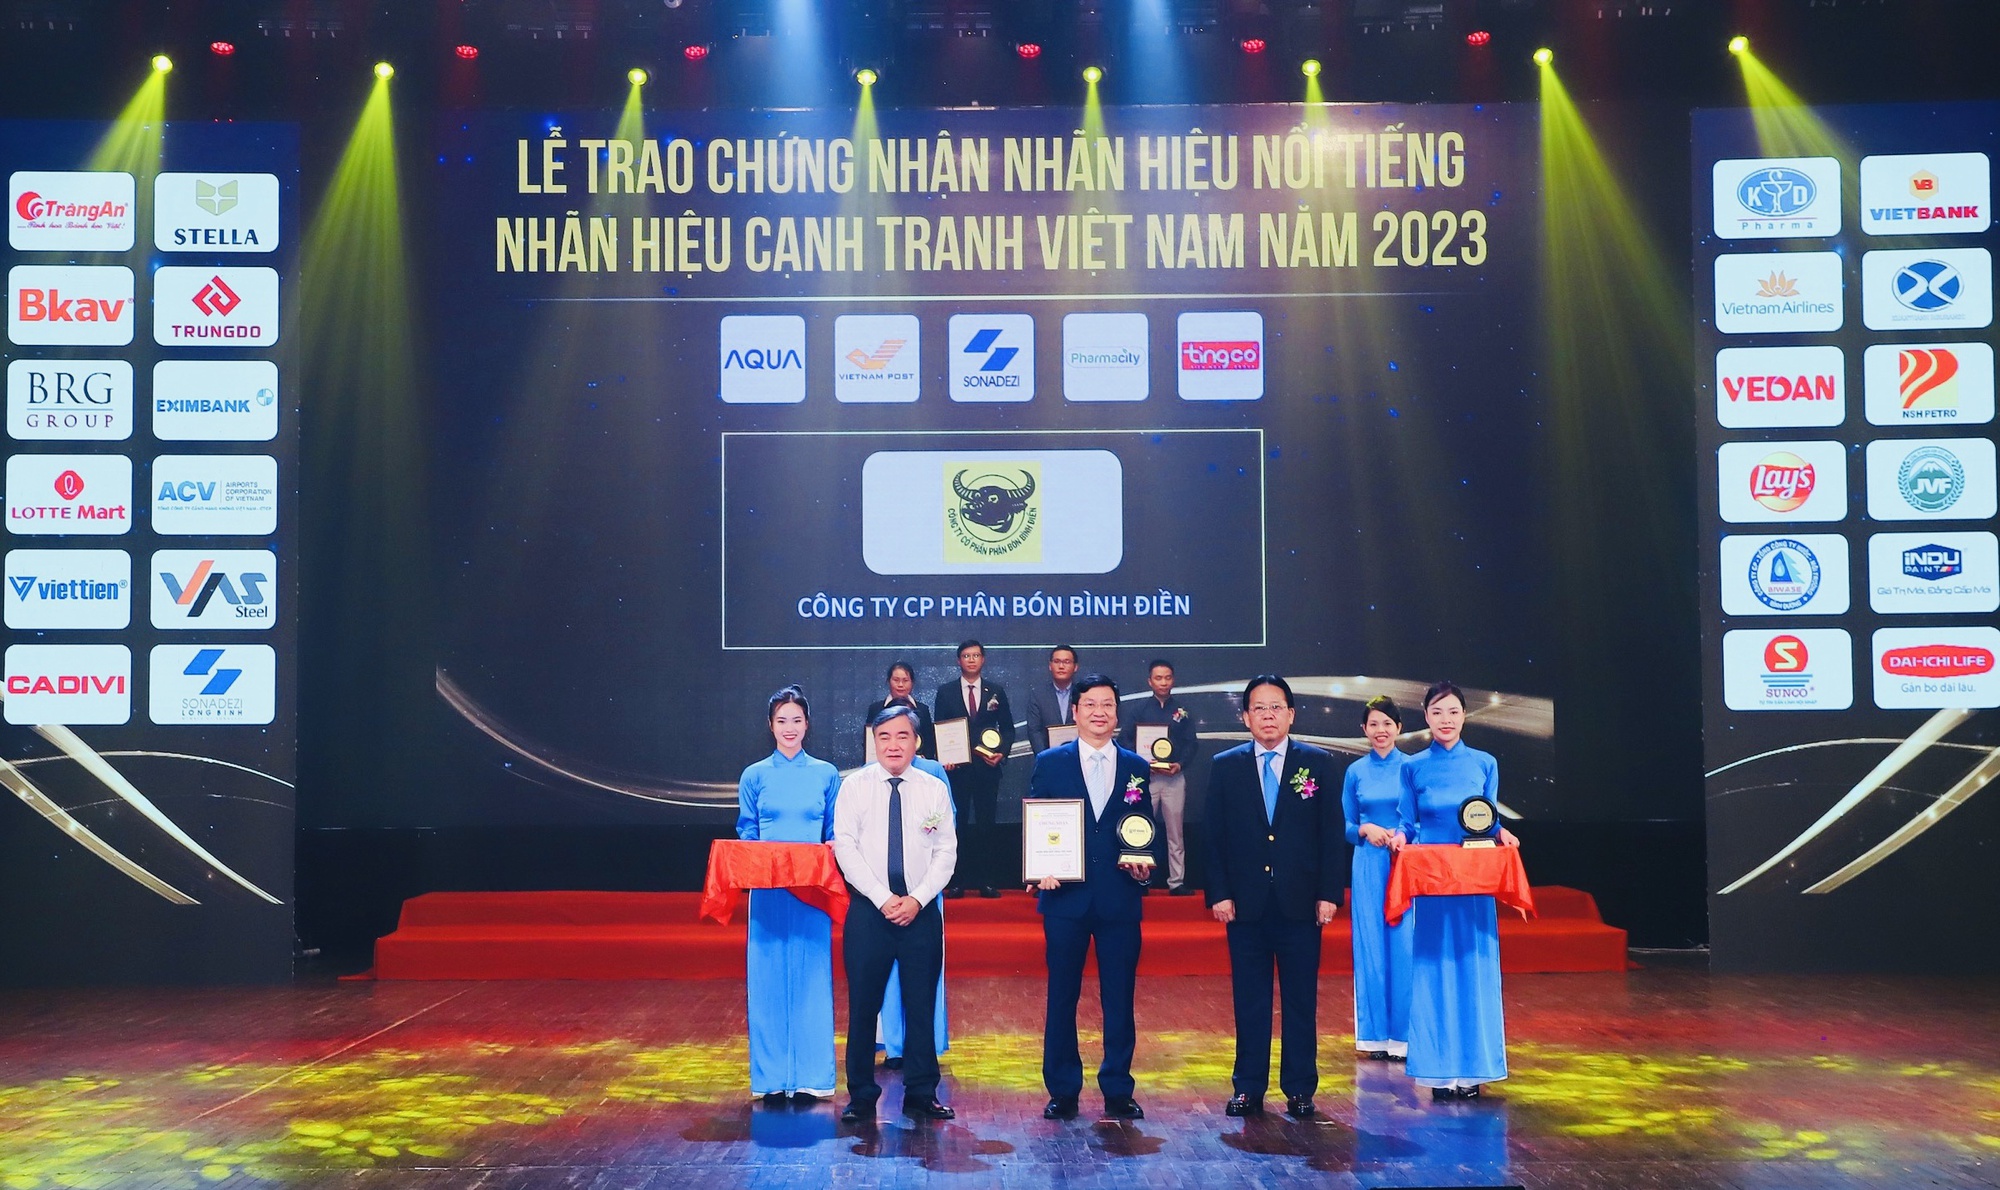 Bình Điền – Đầu Trâu: TOP 10 nhãn hiệu nổi tiếng Việt Nam 2023 - Ảnh 3.